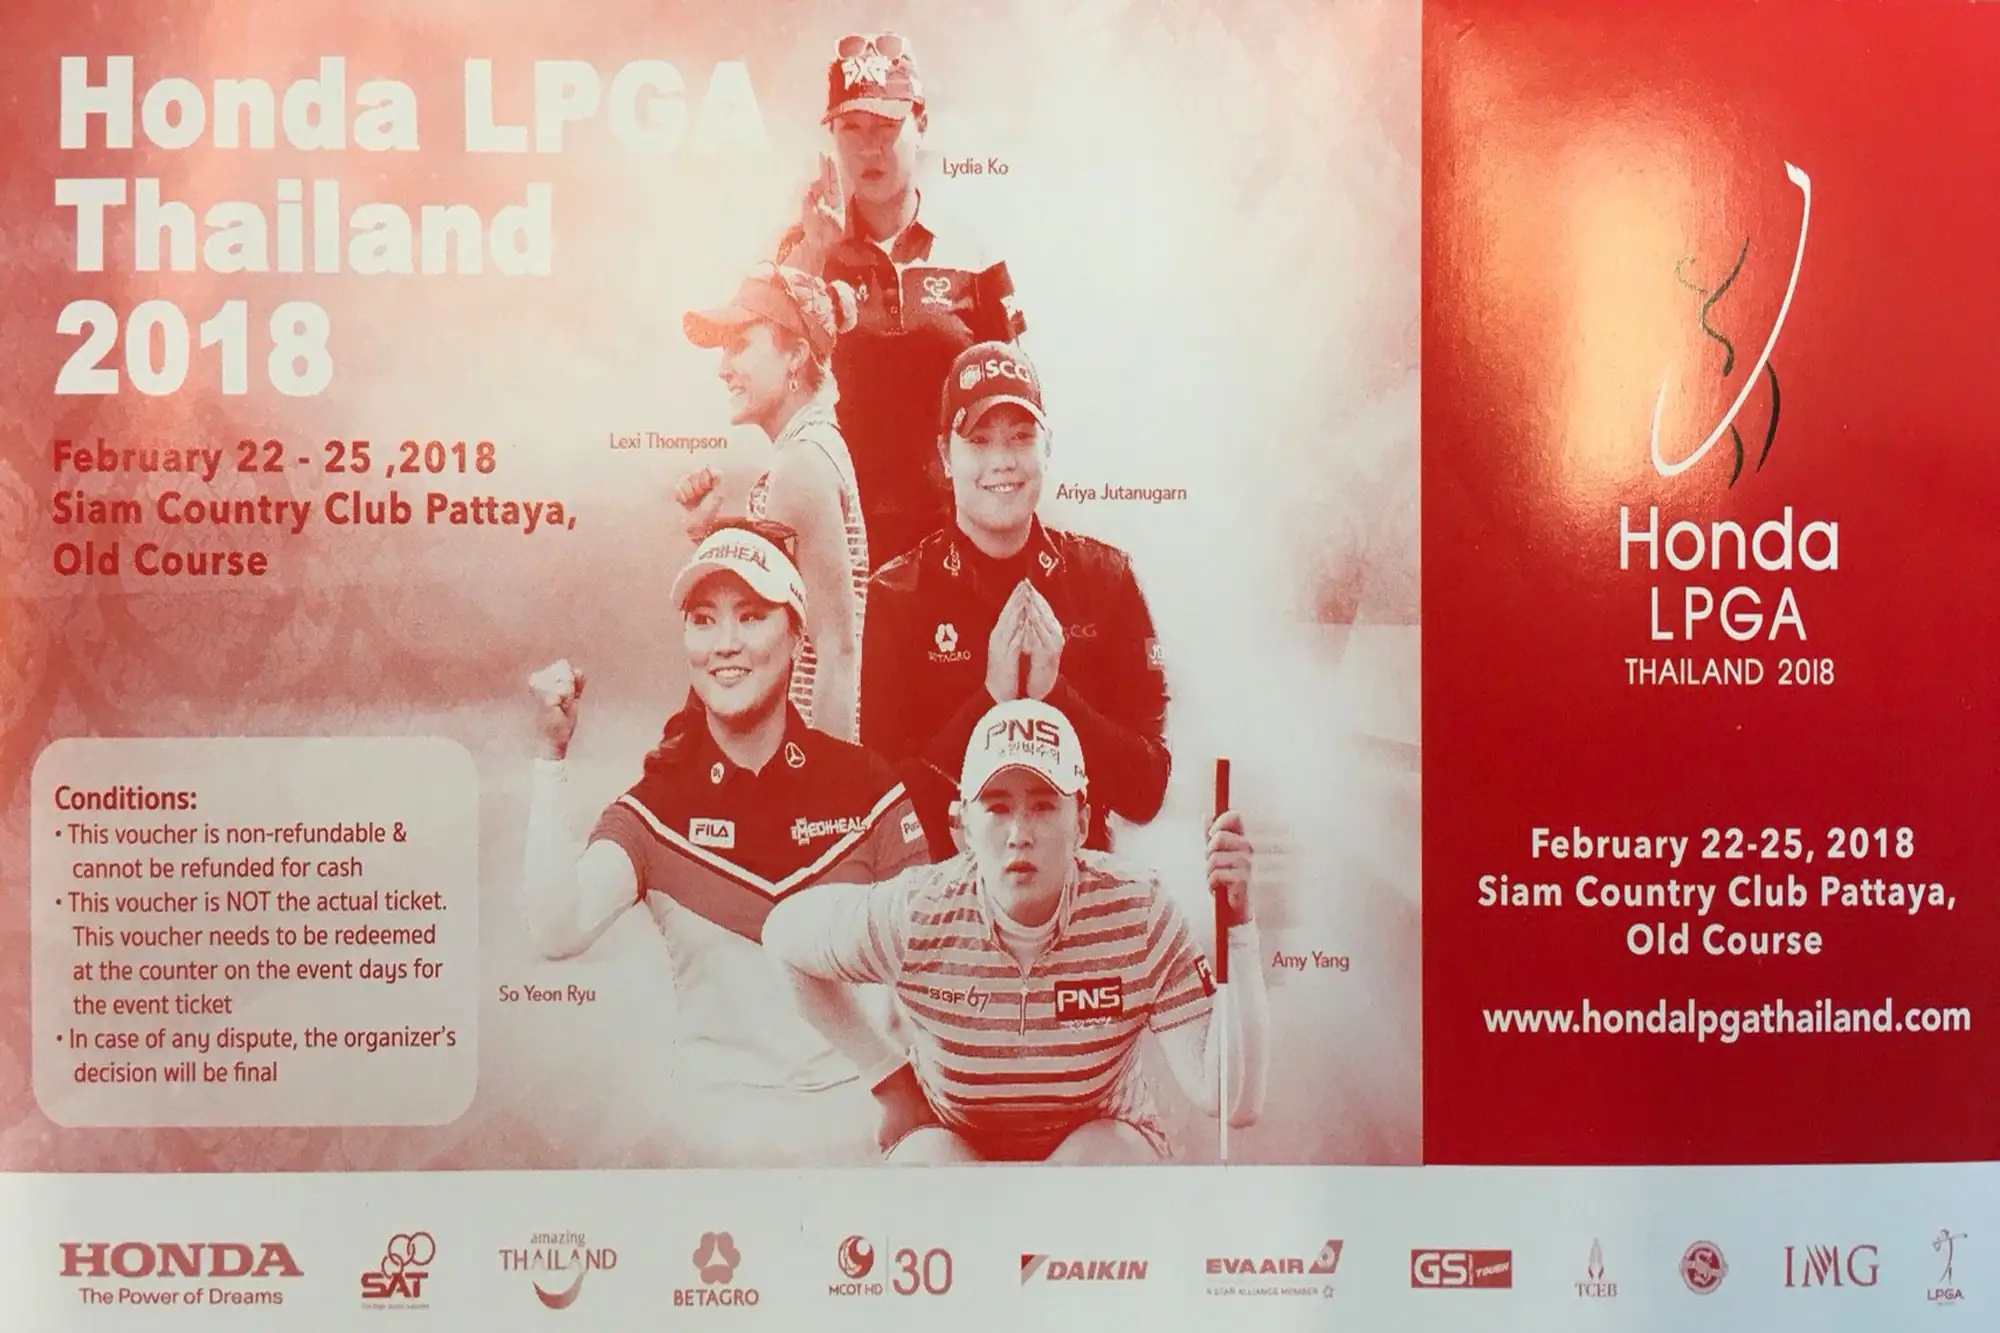 第12屆LPGA泰國賽Honda LPGA THAILAND 2018 2月22-25日在芭堤雅舉行 70名頂尖好手爭奪本屆冠軍獎盃